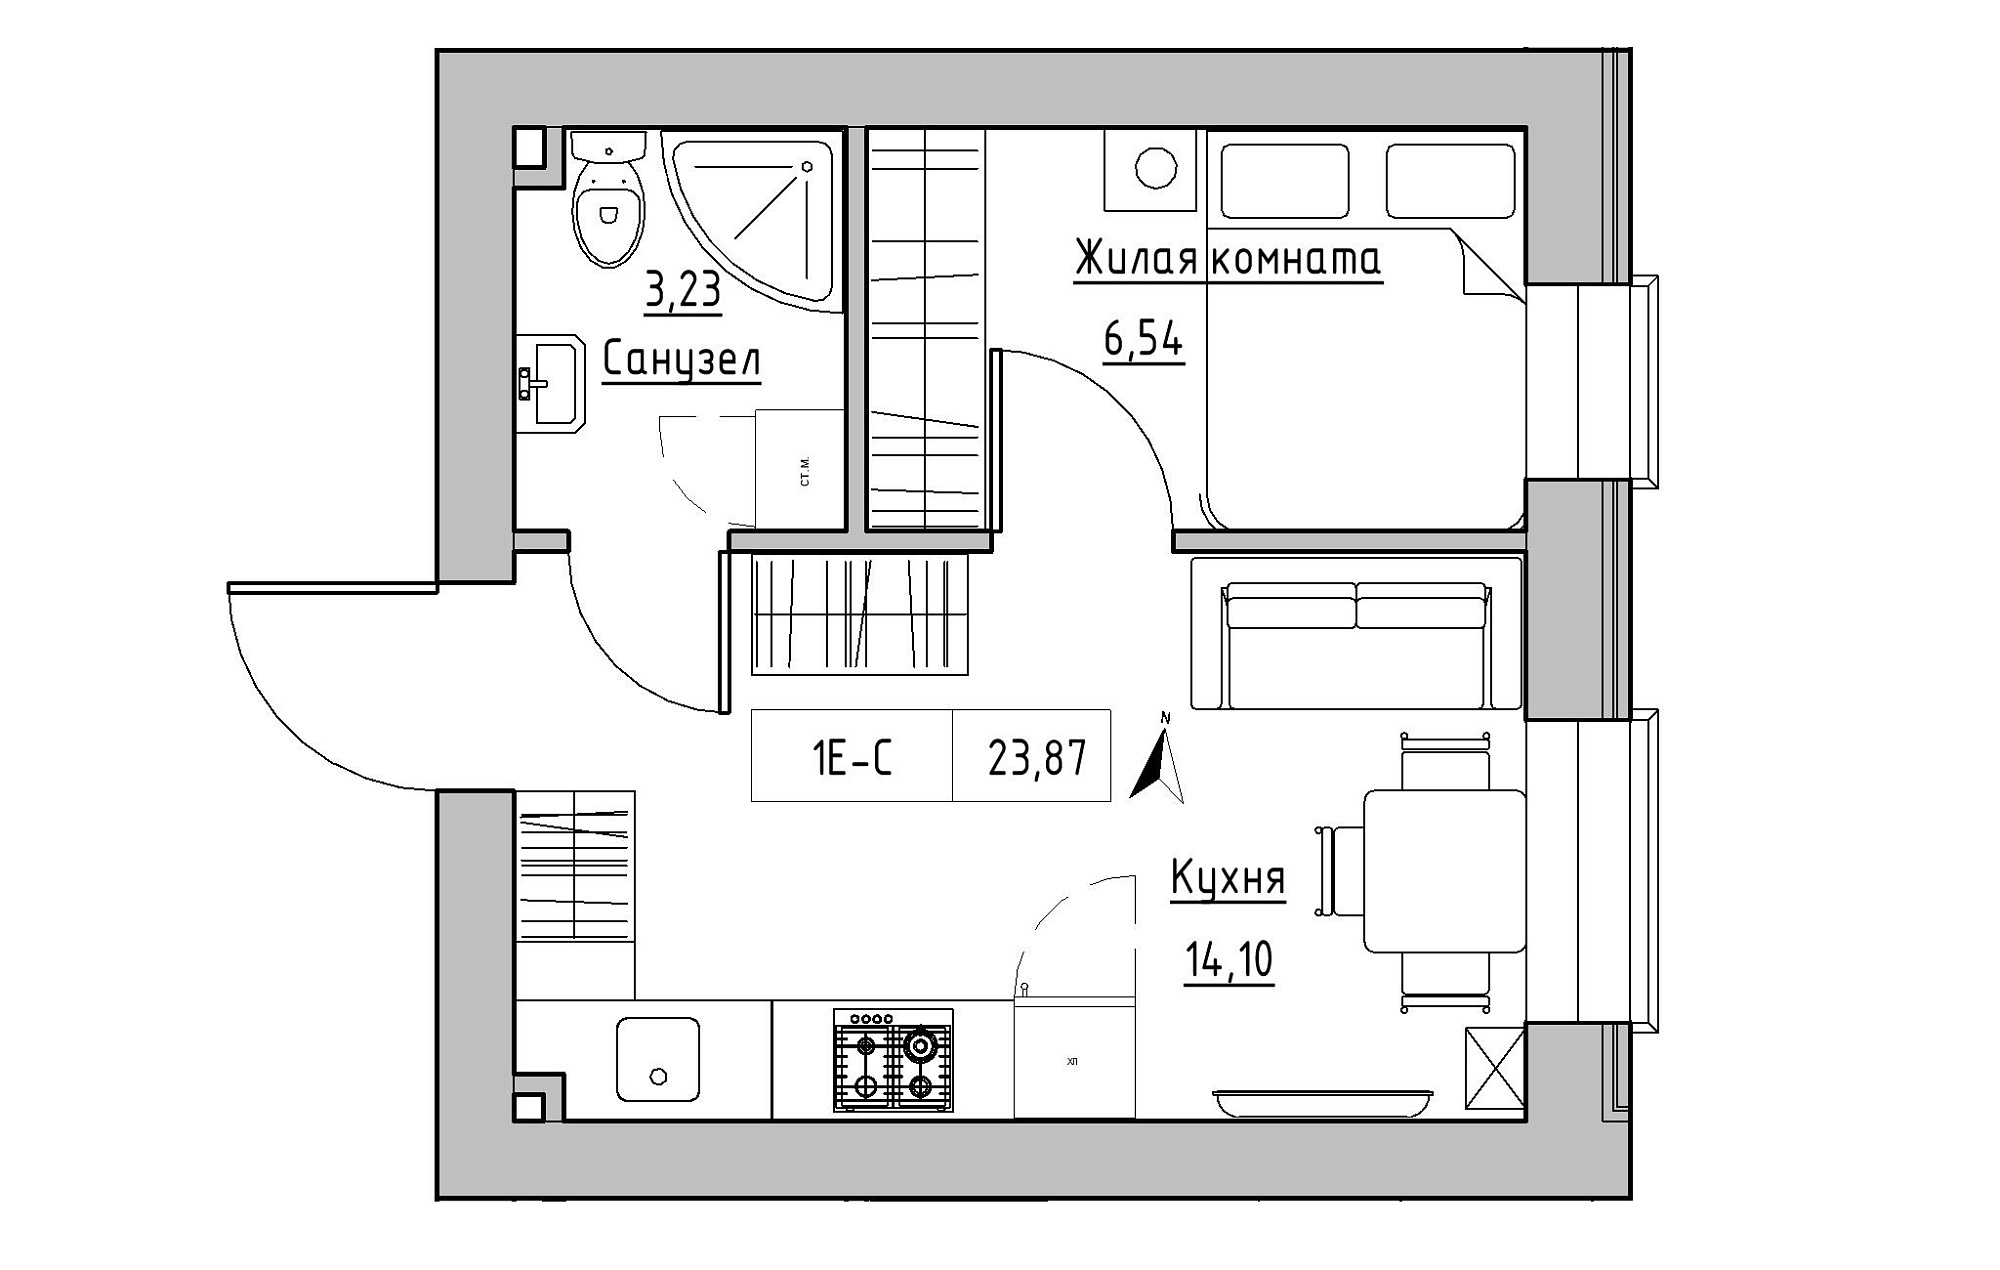 Планировка 1-к квартира площей 23.87м2, KS-019-03/0004.